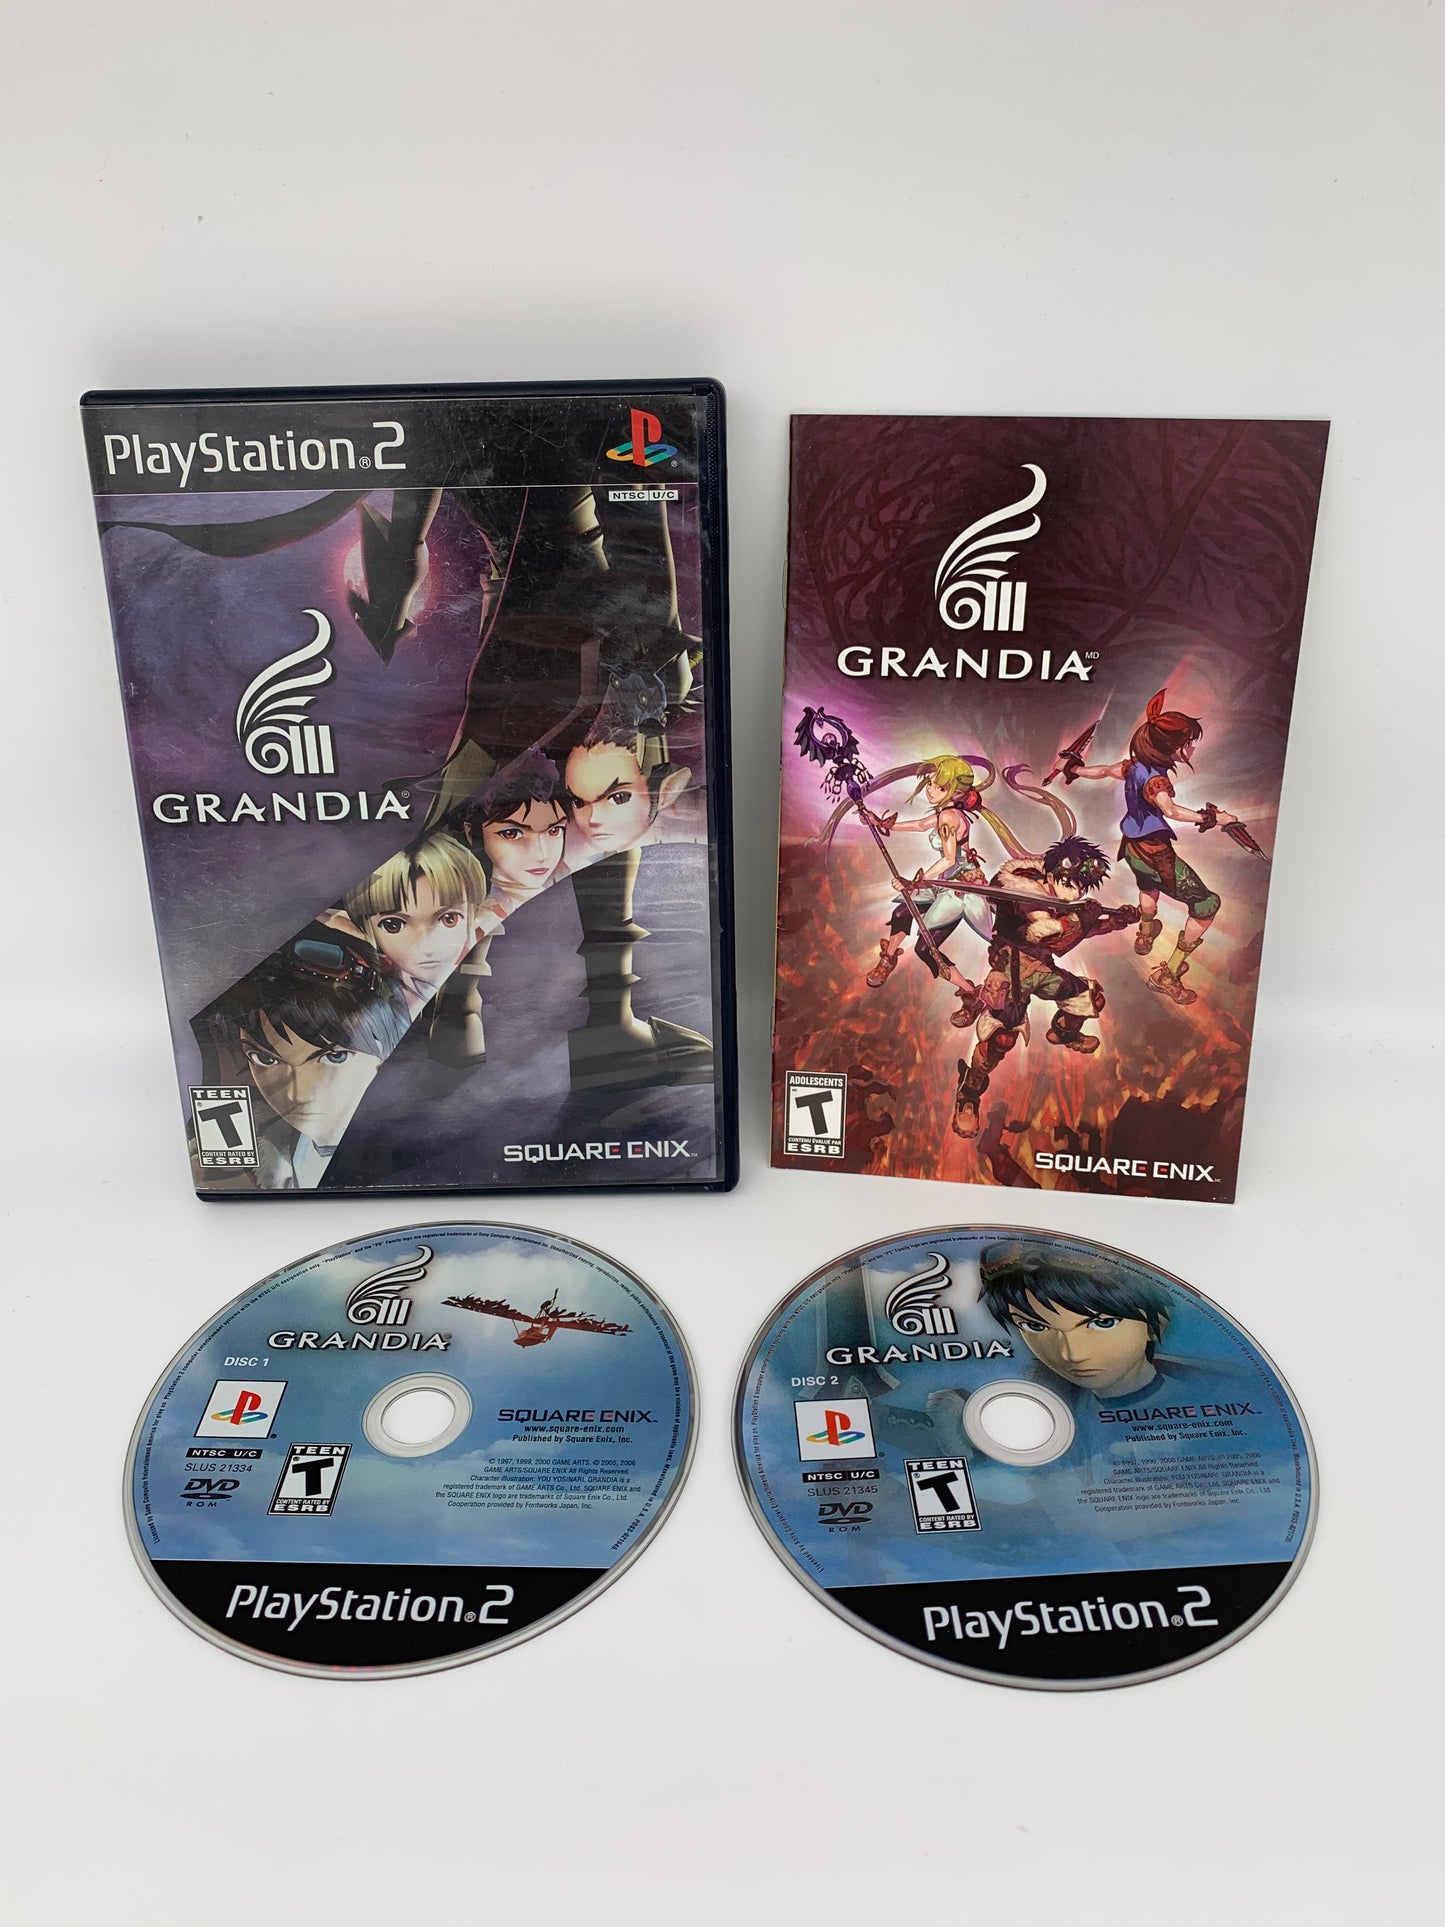 PiXEL-RETRO.COM : SONY PLAYSTATION 2 (PS2) COMPLET CIB BOX MANUAL GAME NTSC GRANDiA III